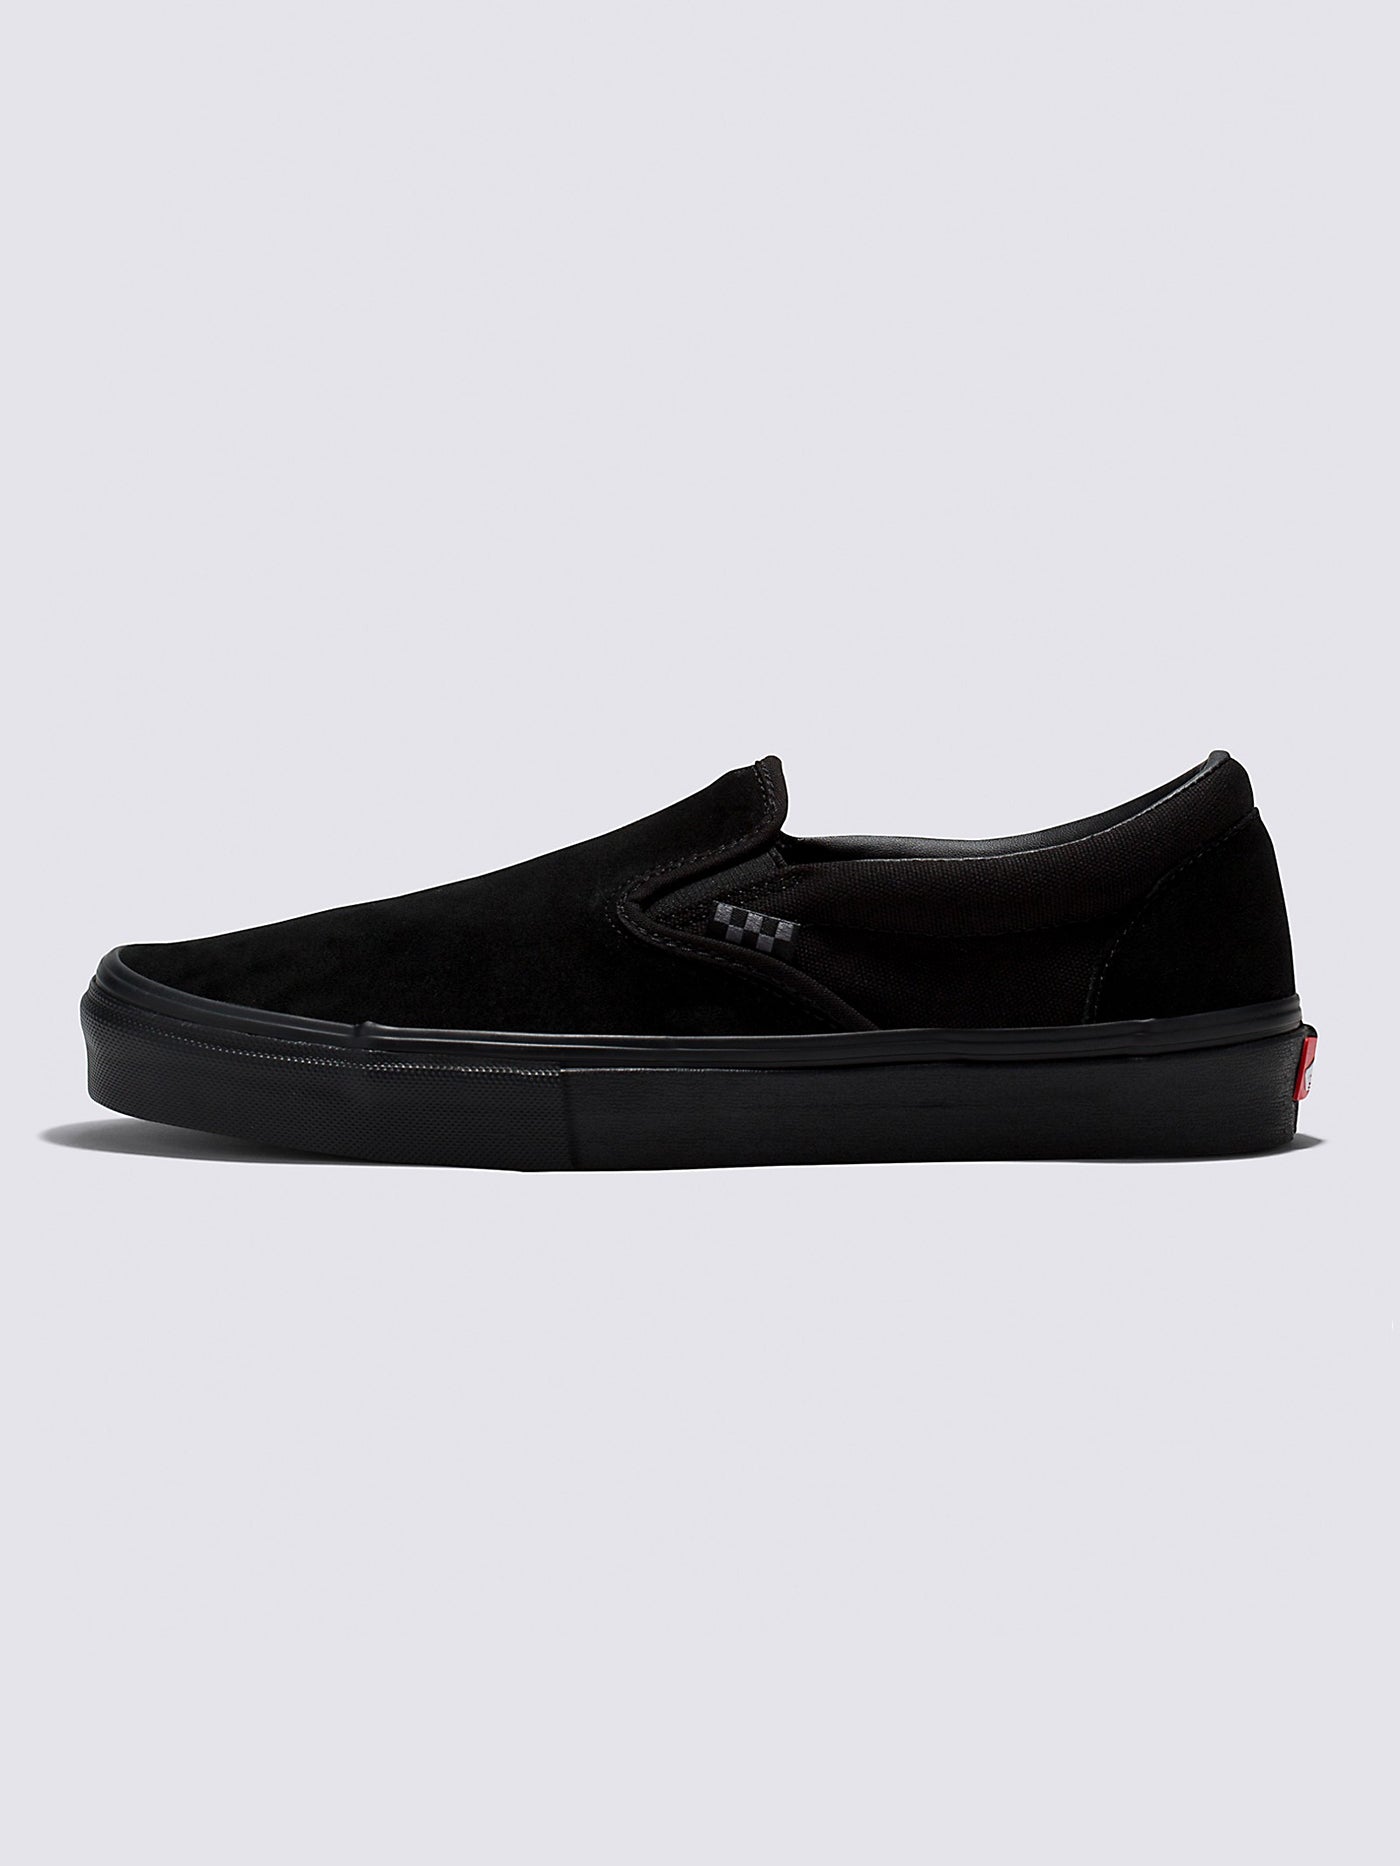 Vans Skate Slip-On Black/Black Shoes